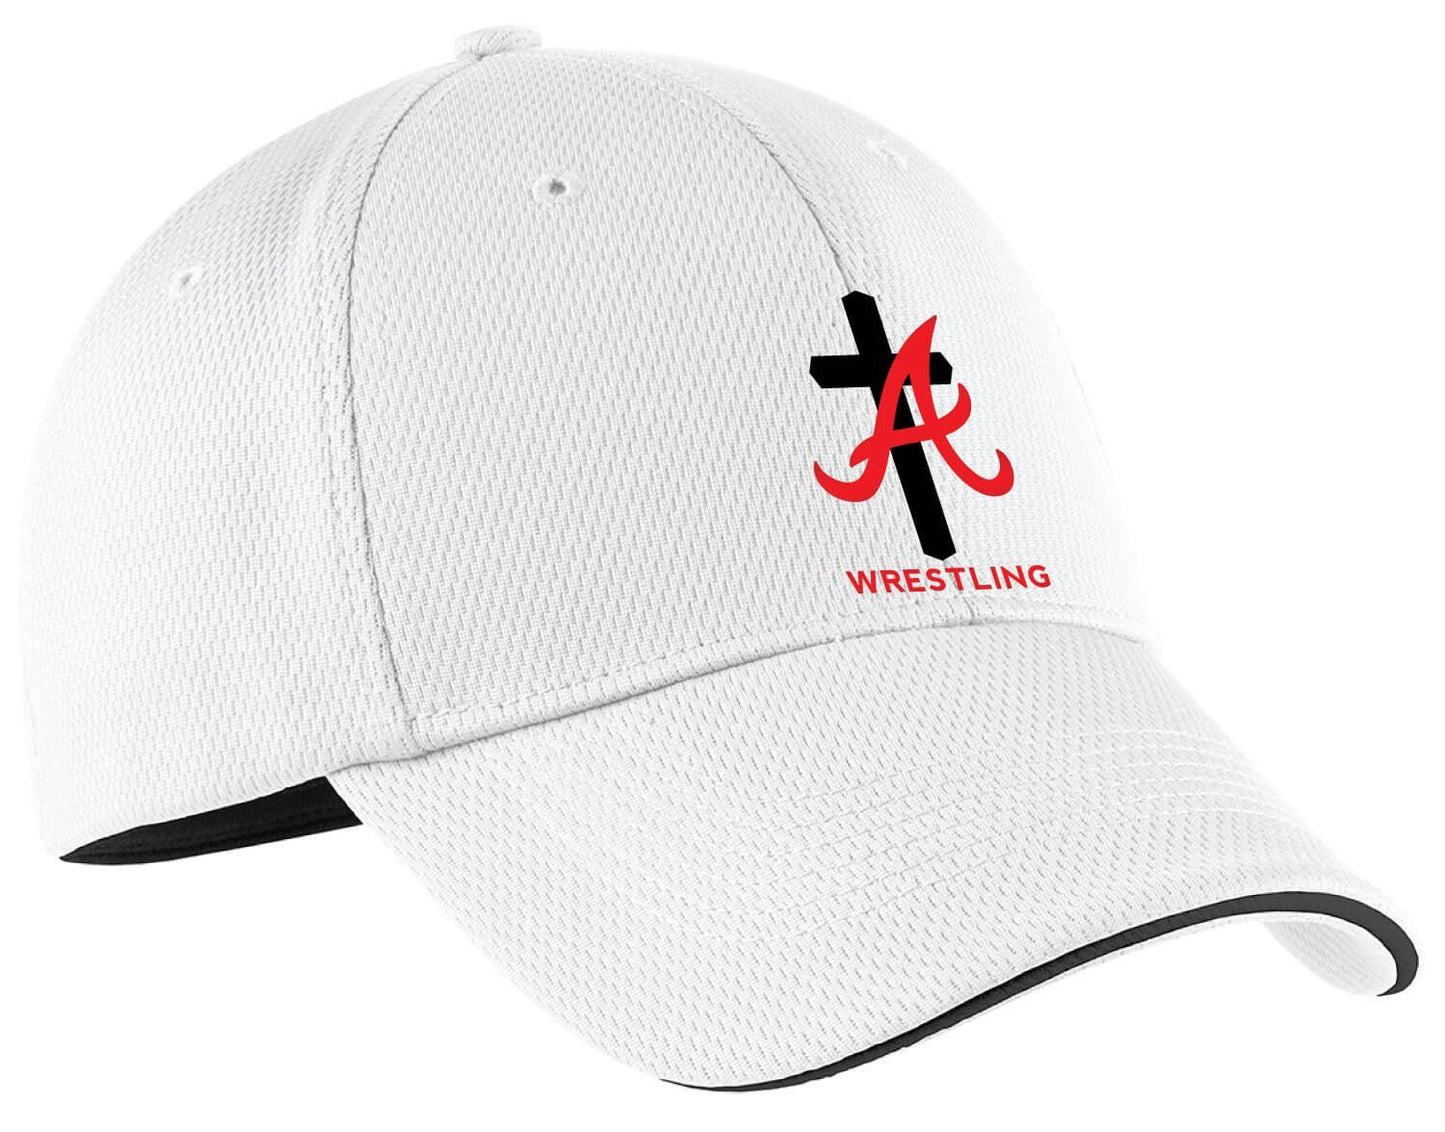 Assumption Wrestling Nike Flex Fit Hat